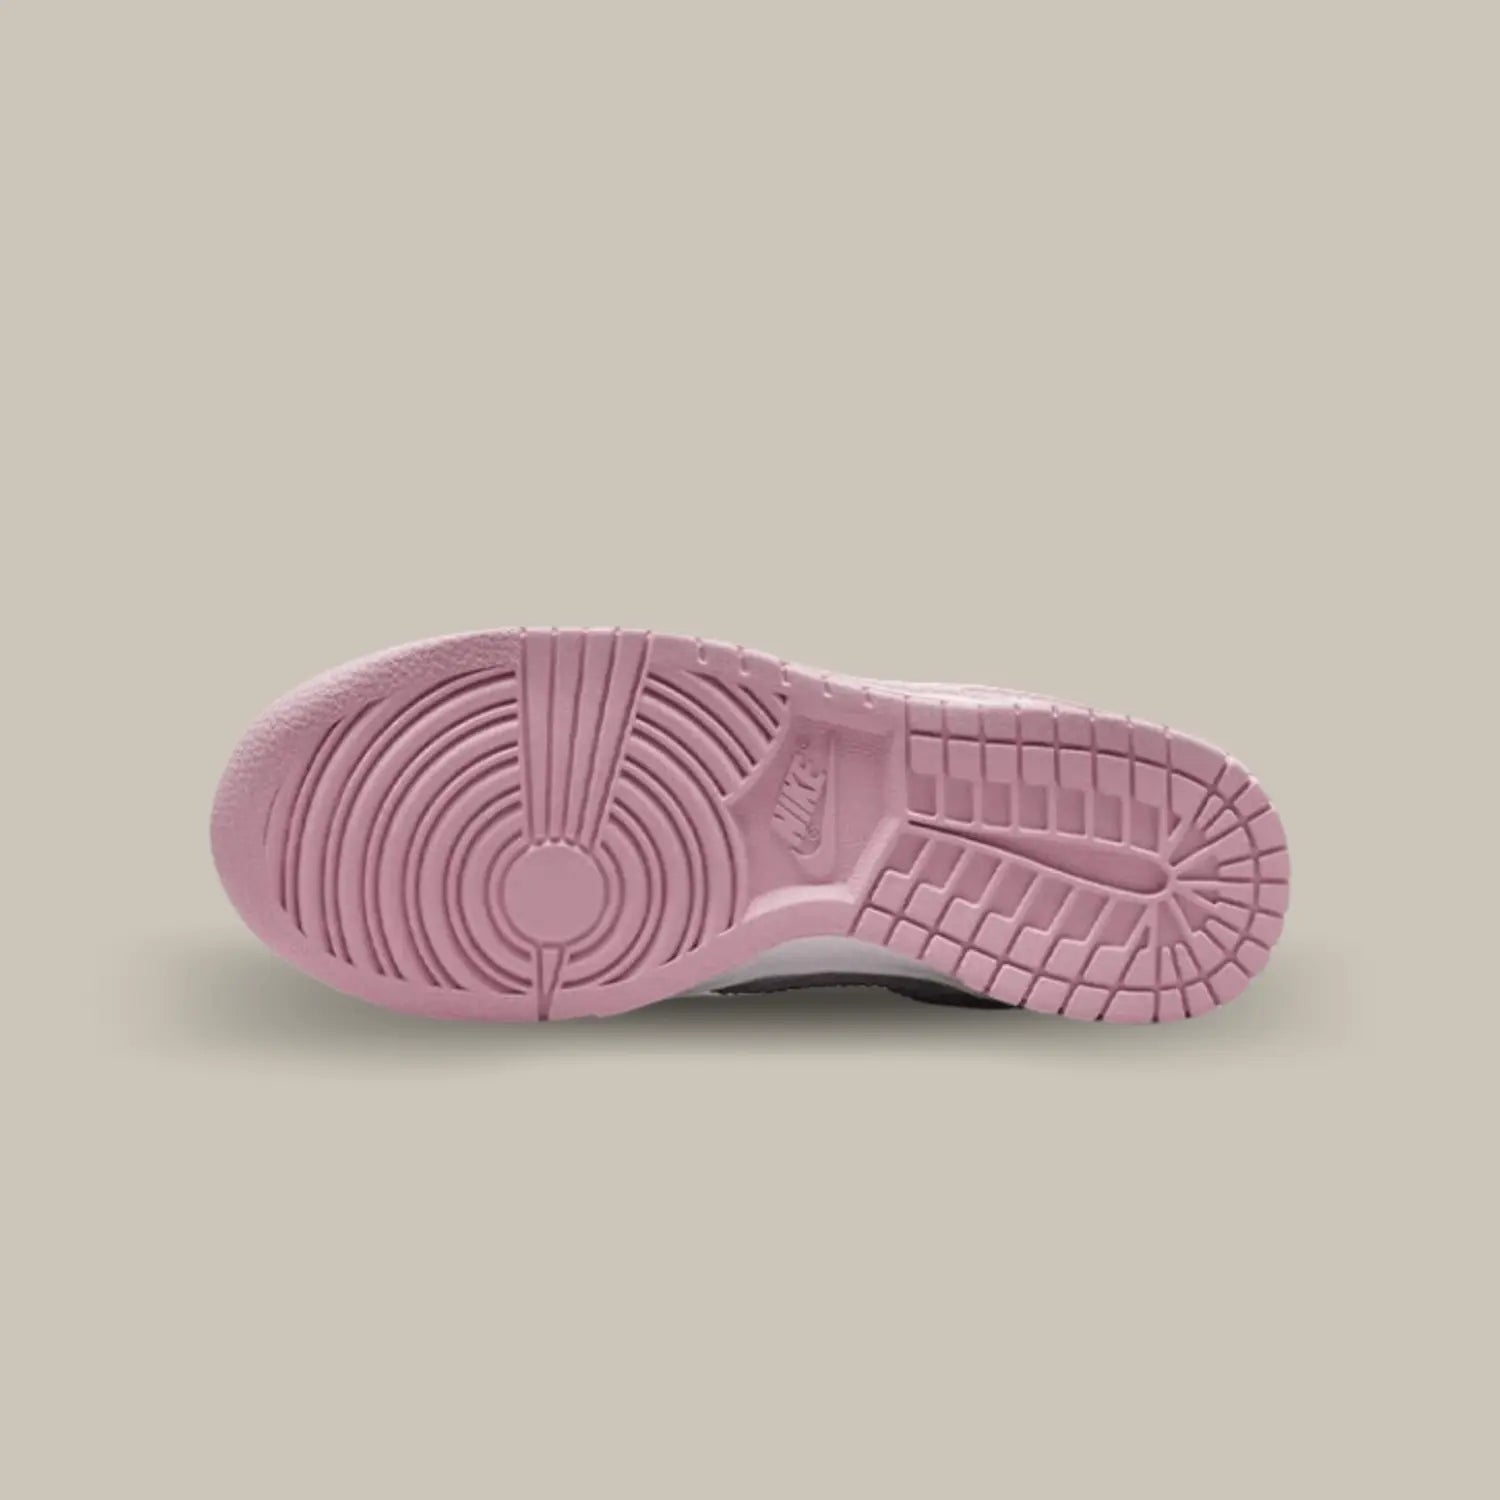 La semelle de la Nike Dunk Low Corduroy Pink de couleur rose.